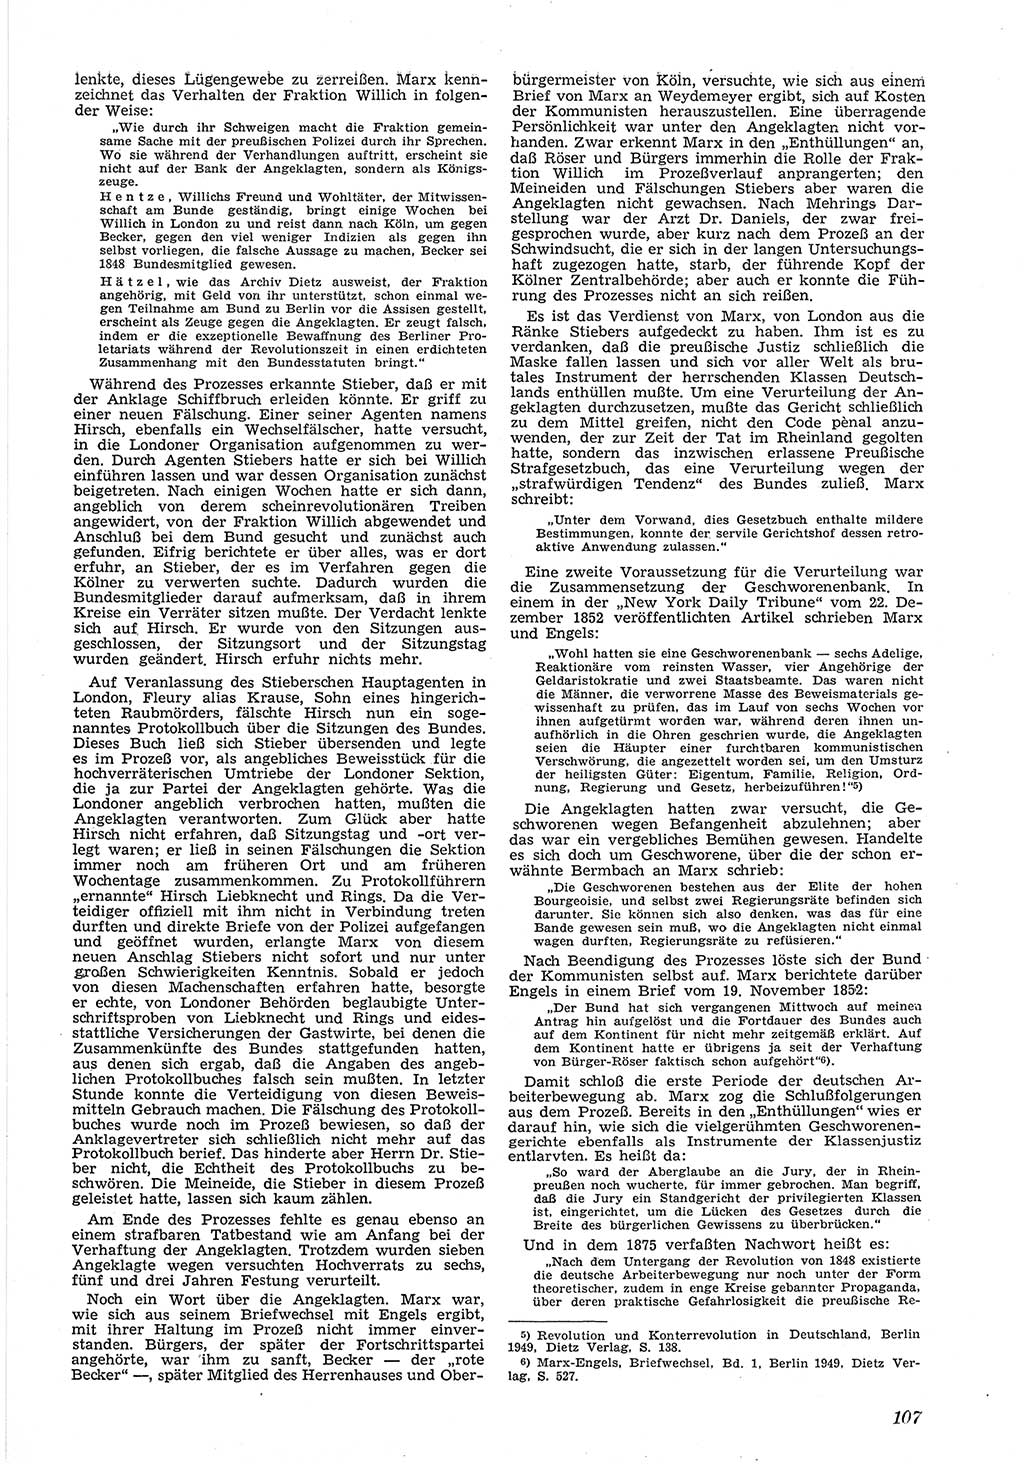 Neue Justiz (NJ), Zeitschrift für Recht und Rechtswissenschaft [Deutsche Demokratische Republik (DDR)], 6. Jahrgang 1952, Seite 107 (NJ DDR 1952, S. 107)